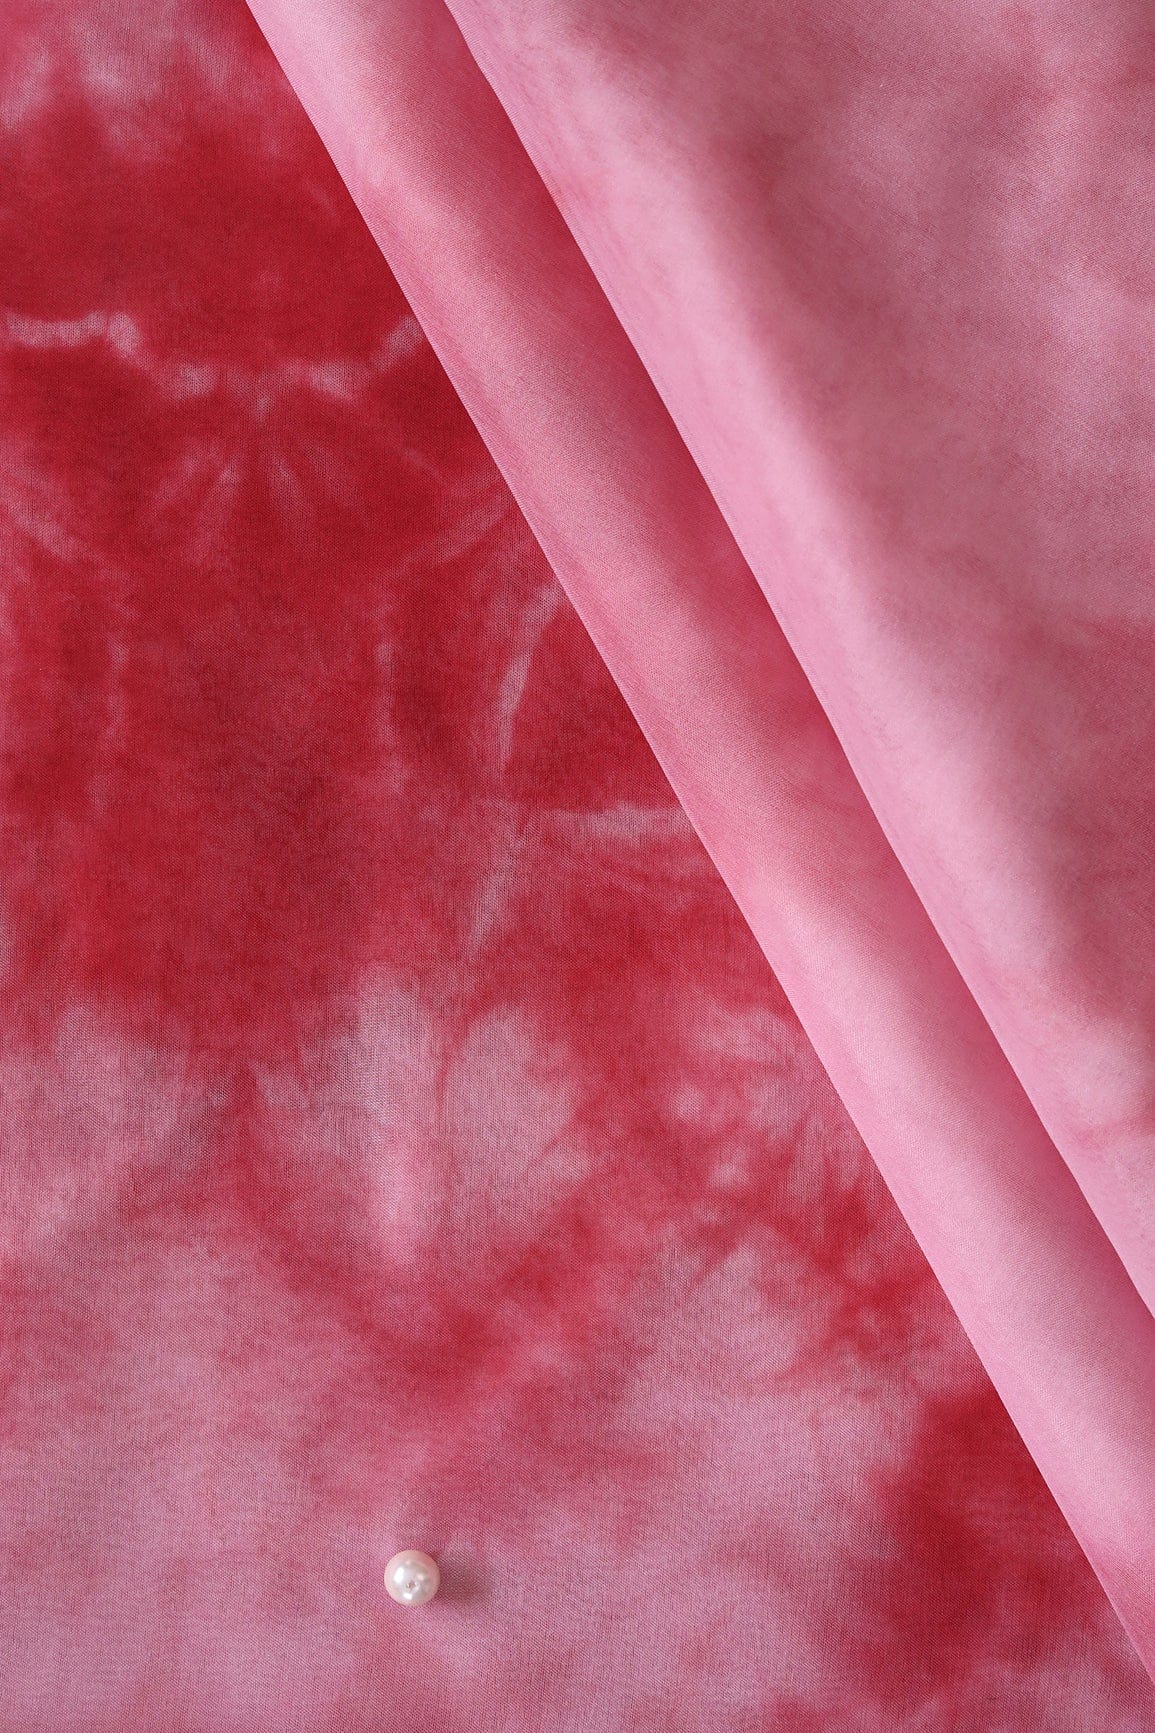 Red And Pink Tie & Dye Shibori Print On Organza Fabric - doeraa